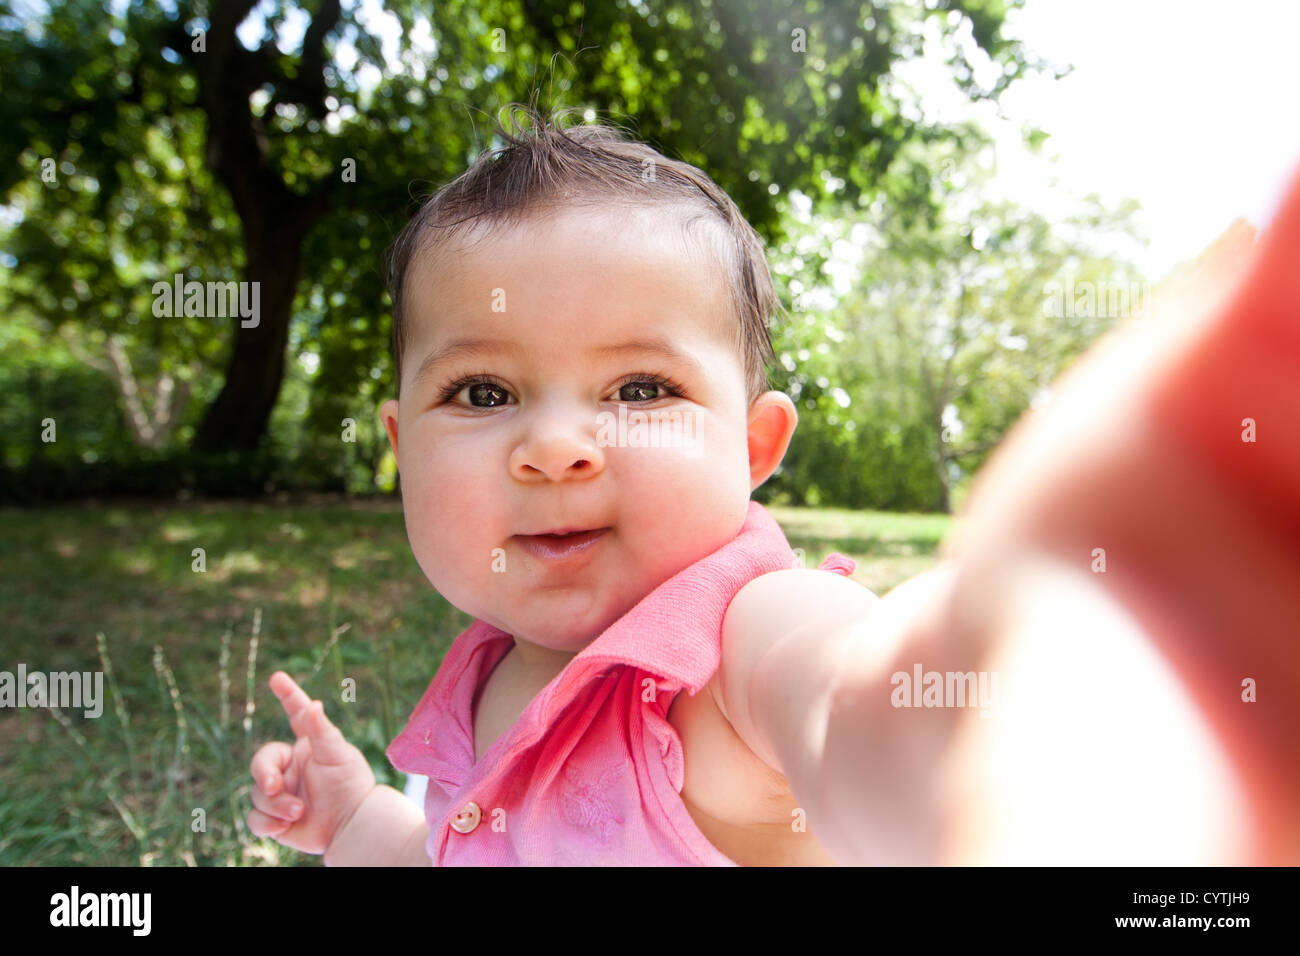 Carino divertente happy baby infant sticking braccio fuori come se sta prendendo autoritratto foto in un parco. Foto Stock